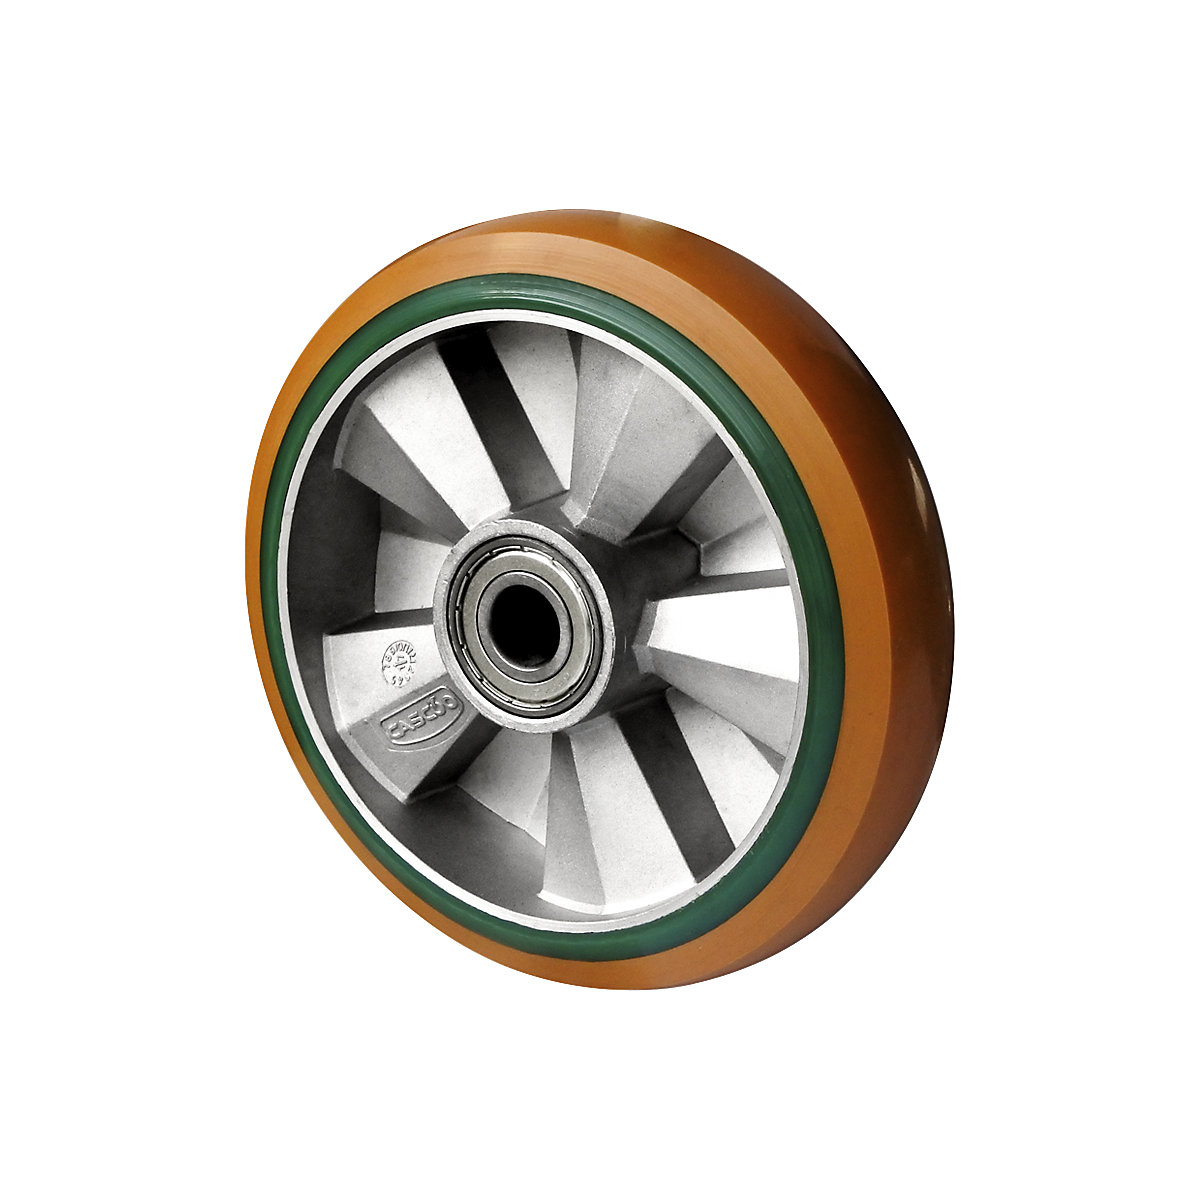 Roda de PU/elástica de PU castanha/verde, rolamento de esferas duplo, a partir de 2 unid., Ø da roda x largura 160 x 50 mm-2